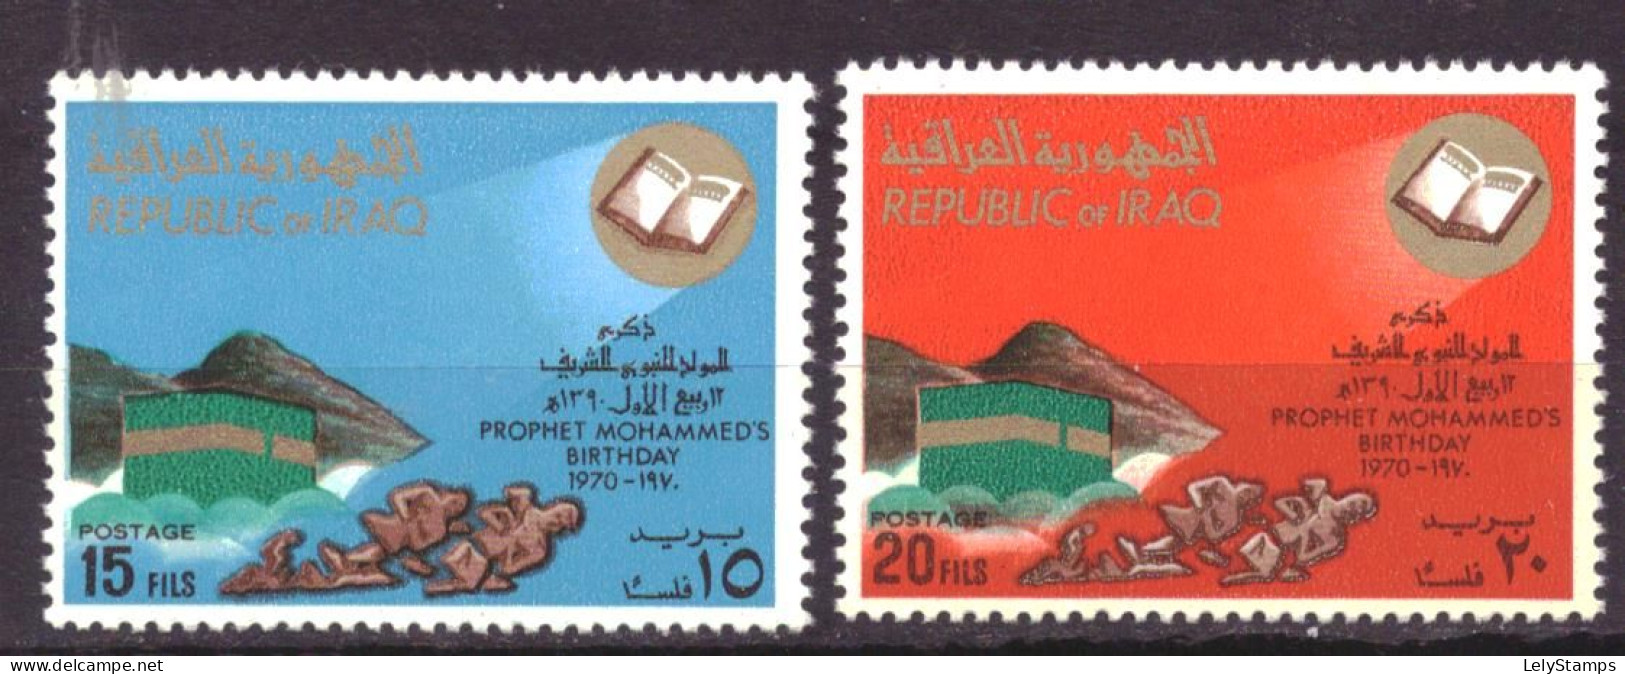 Irak / Iraq 607 & 608 MNH ** Birthday Mohammed (1970) - Irak